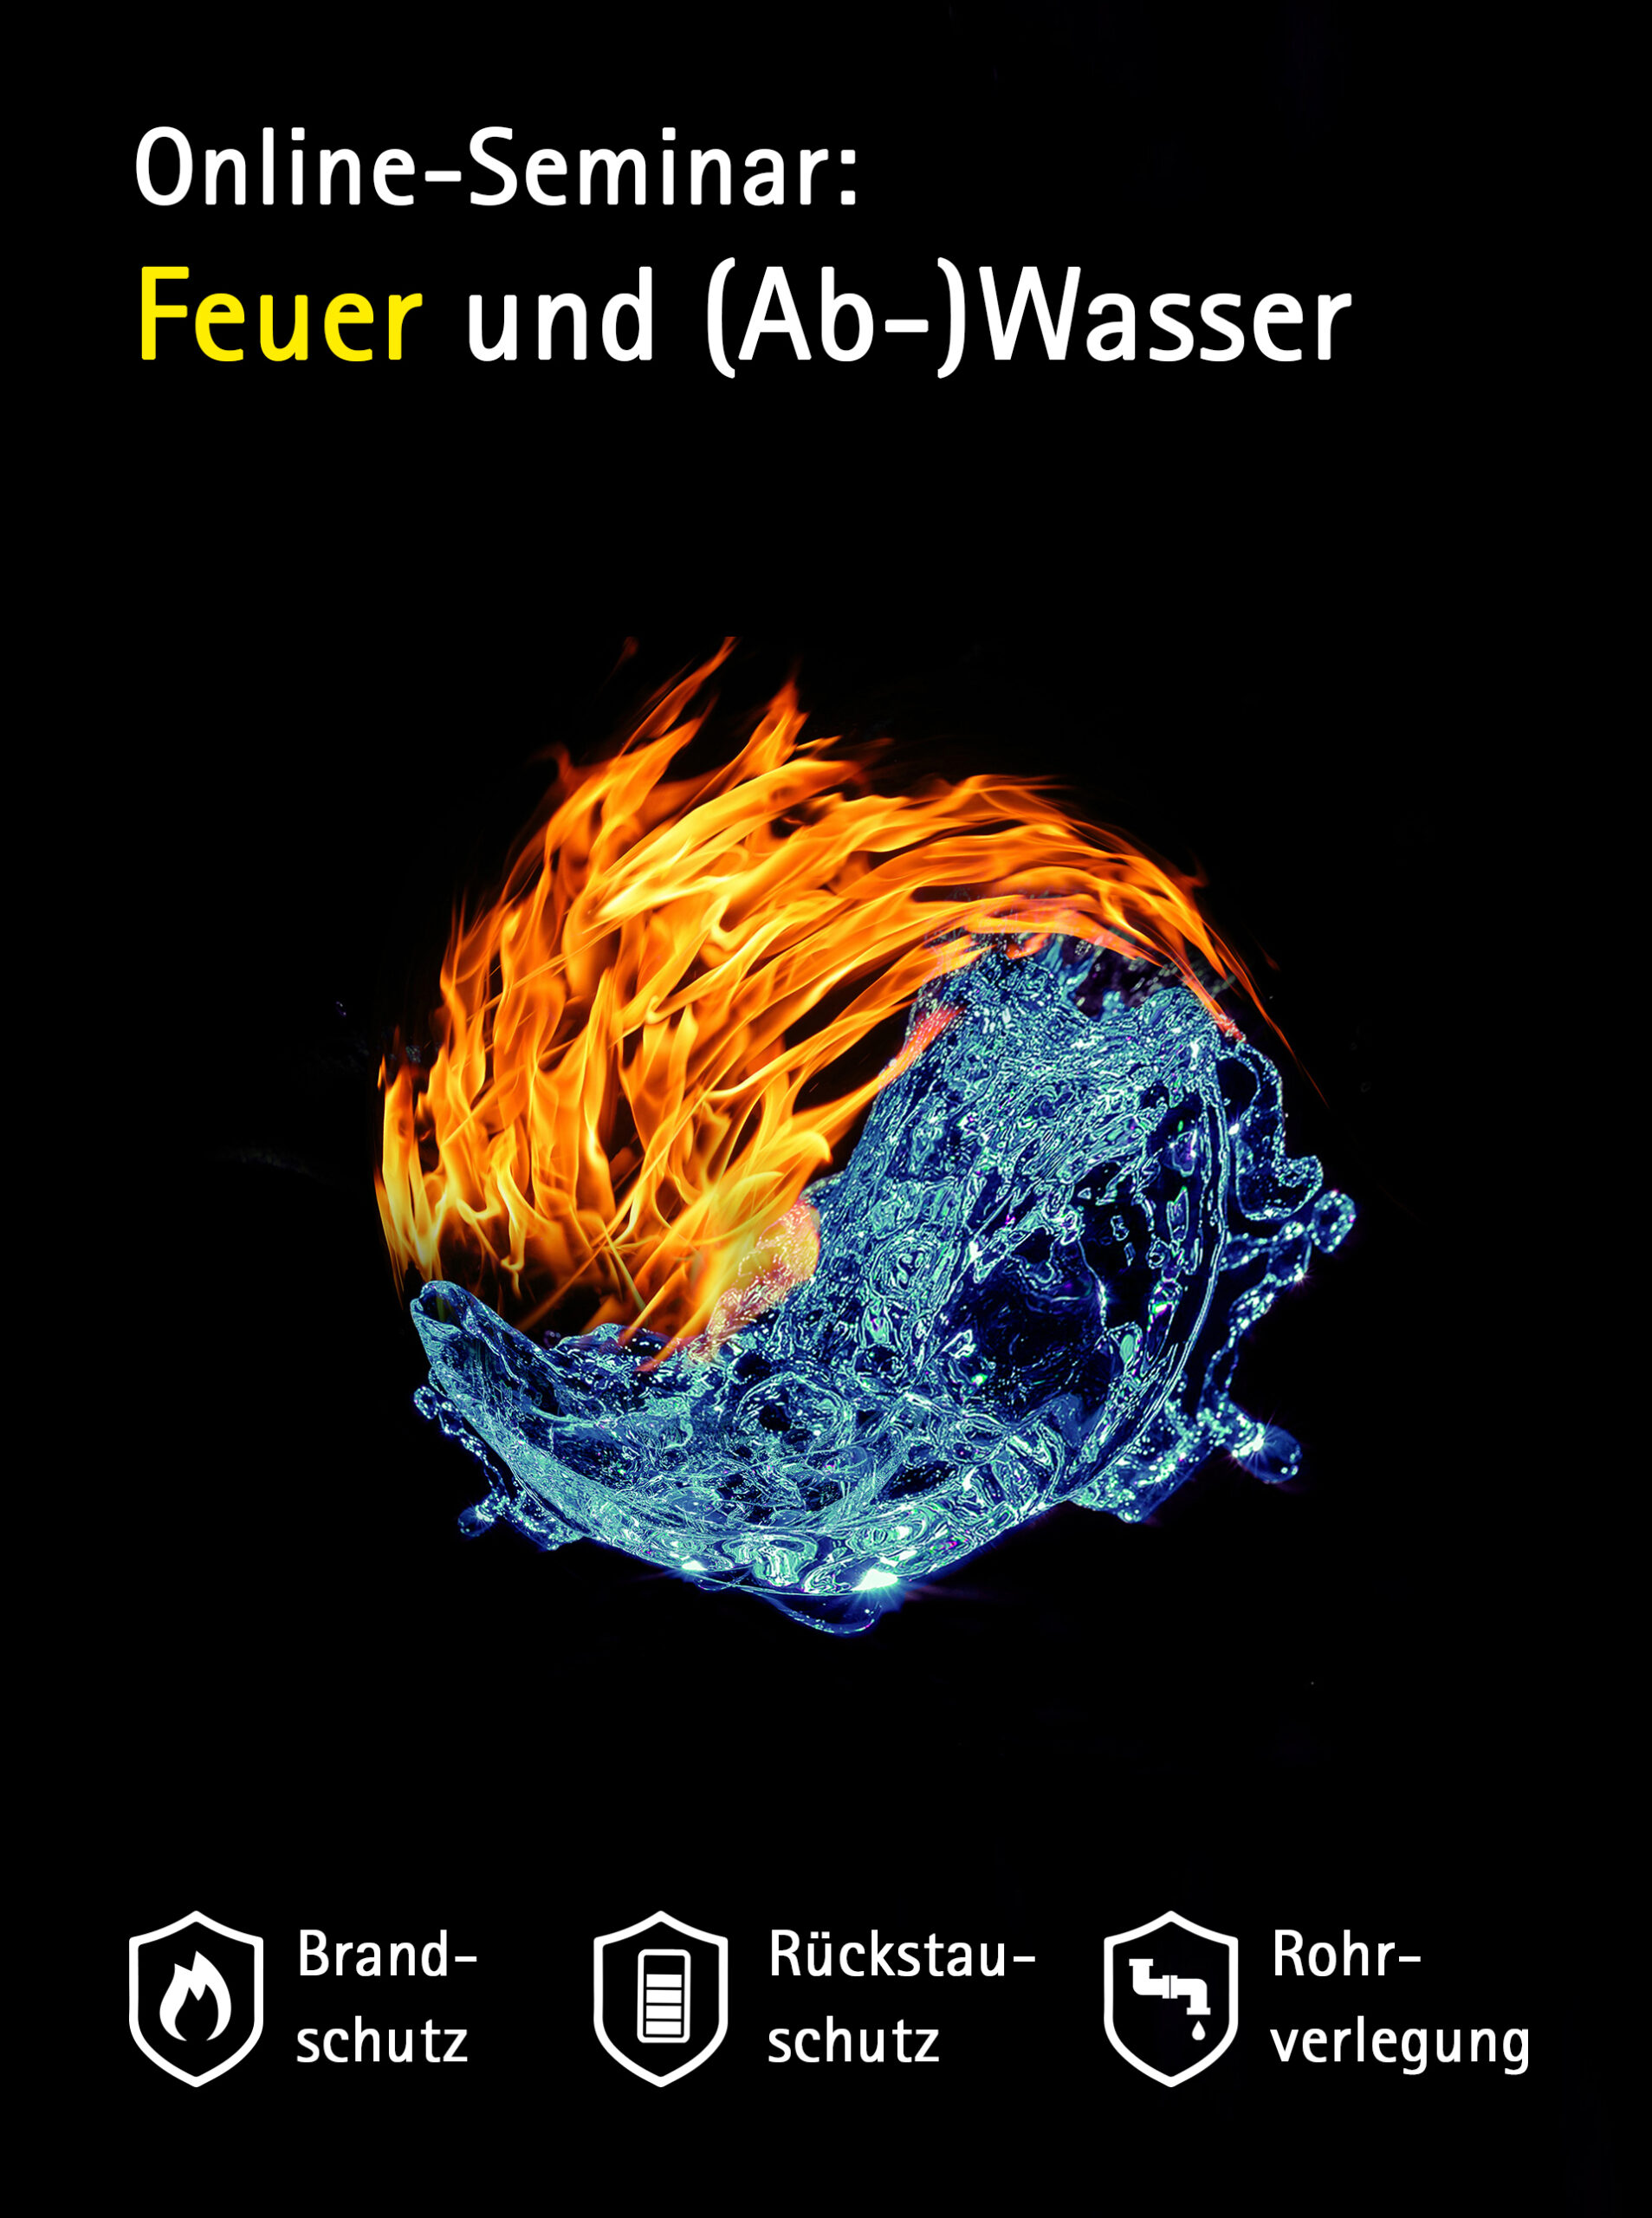 Feuer und (Ab)Wasser - Online-Seminar von Jung Pumpen, Walraven und Poloplast